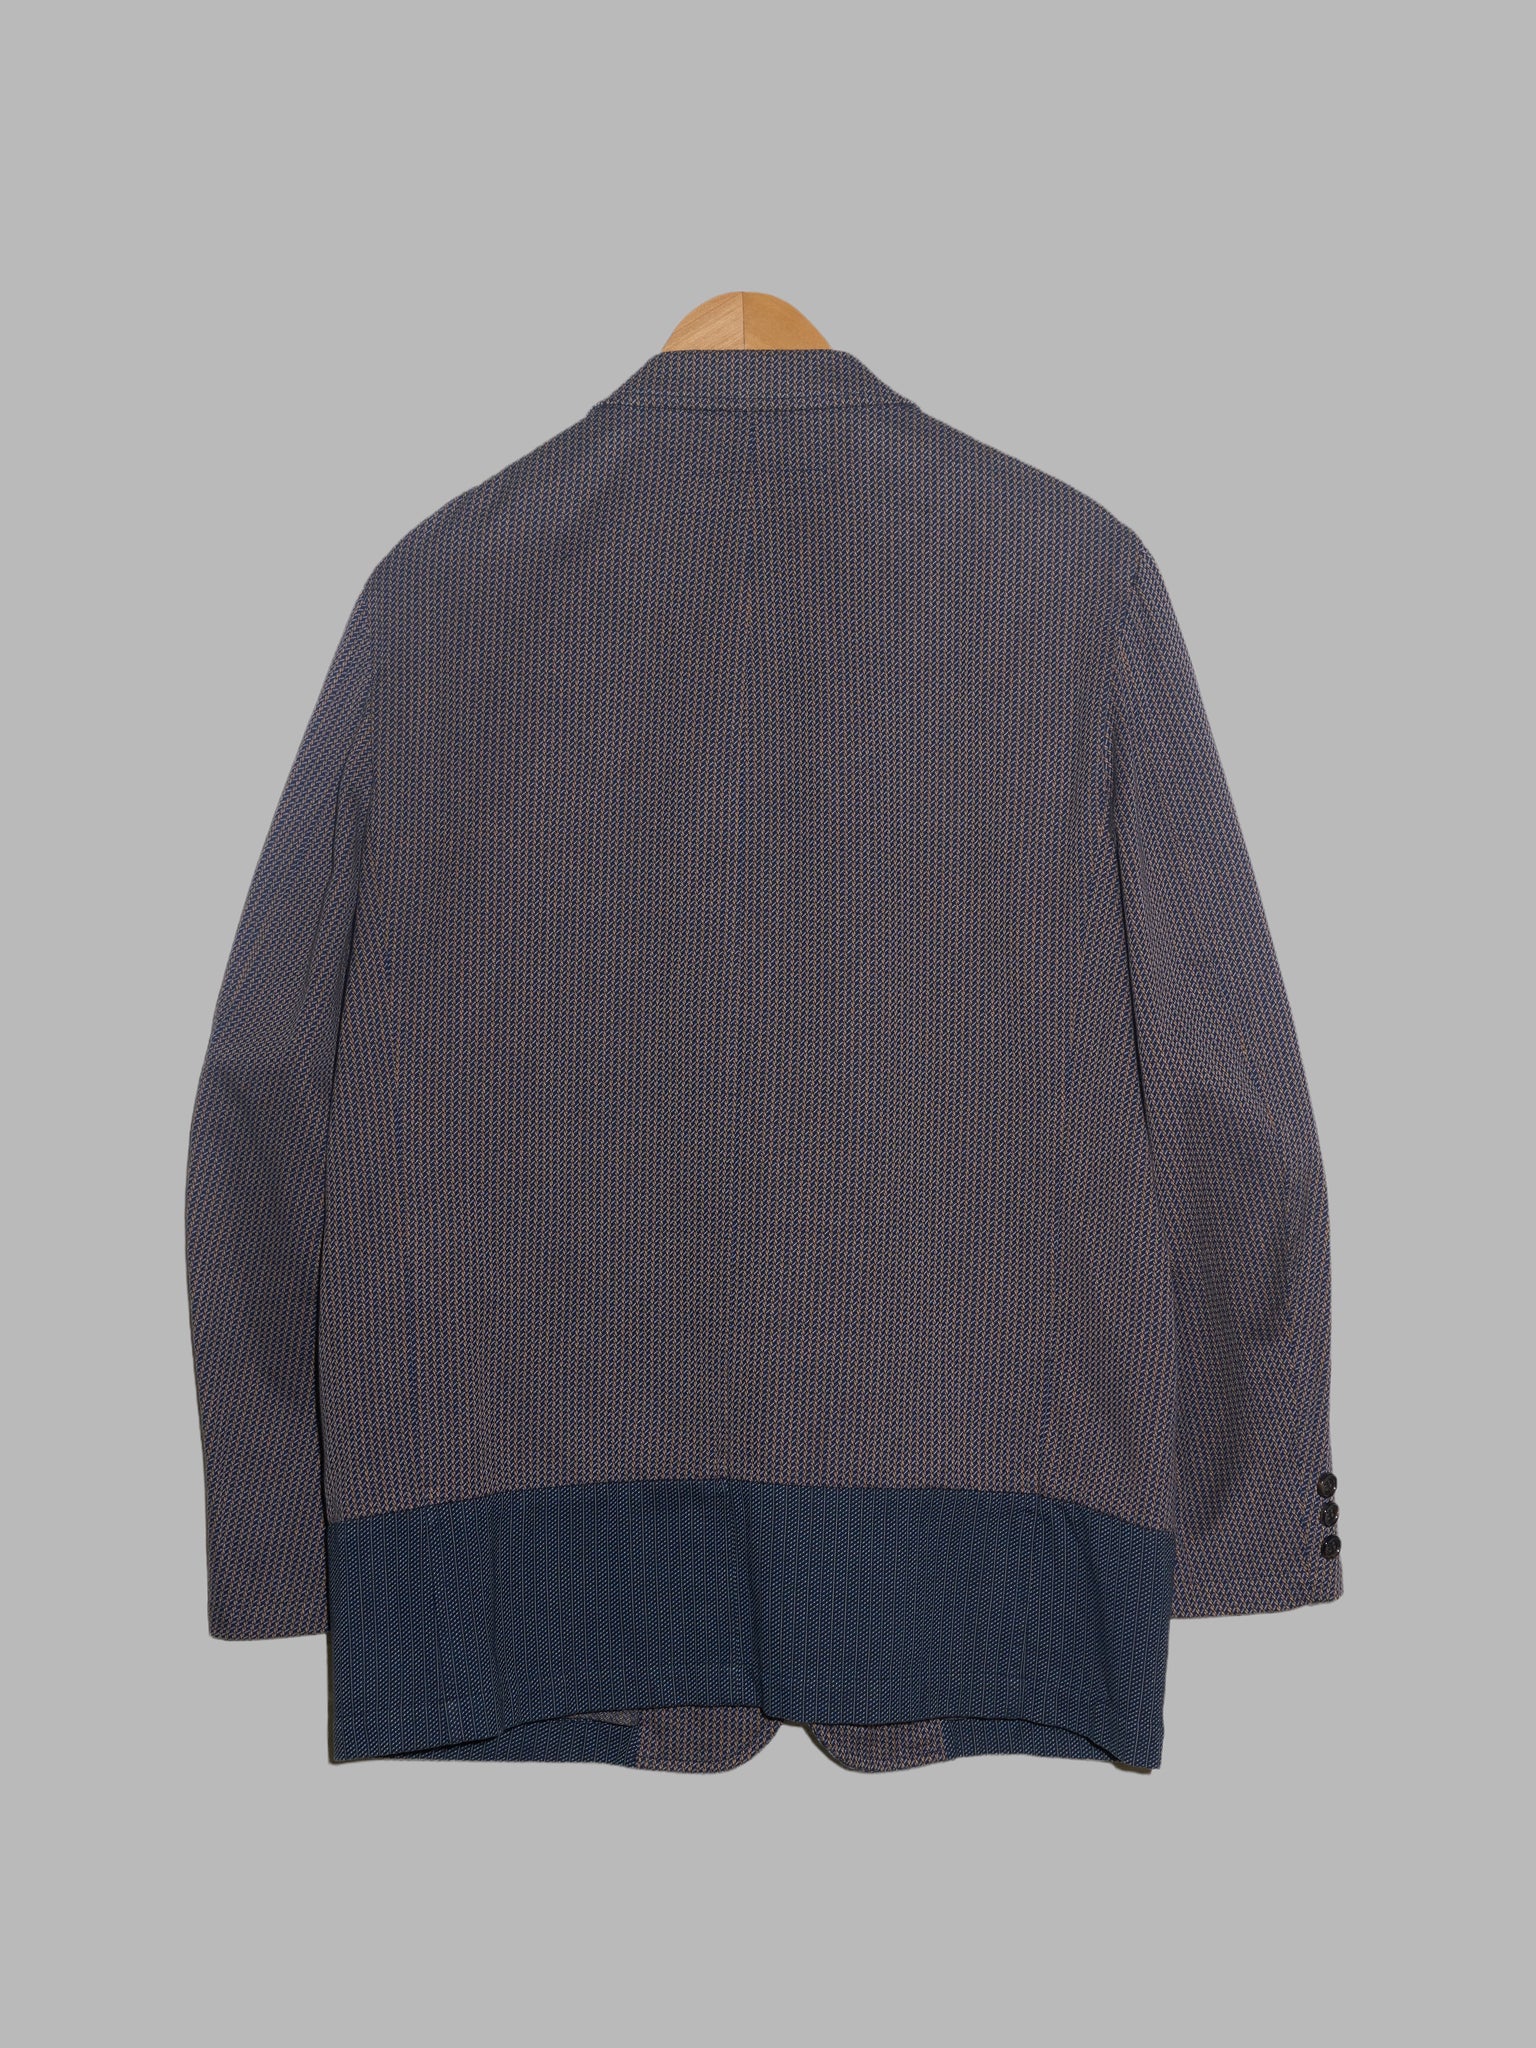 Comme des Garcons Homme 2000 patterned cotton patchwork three button blazer - M